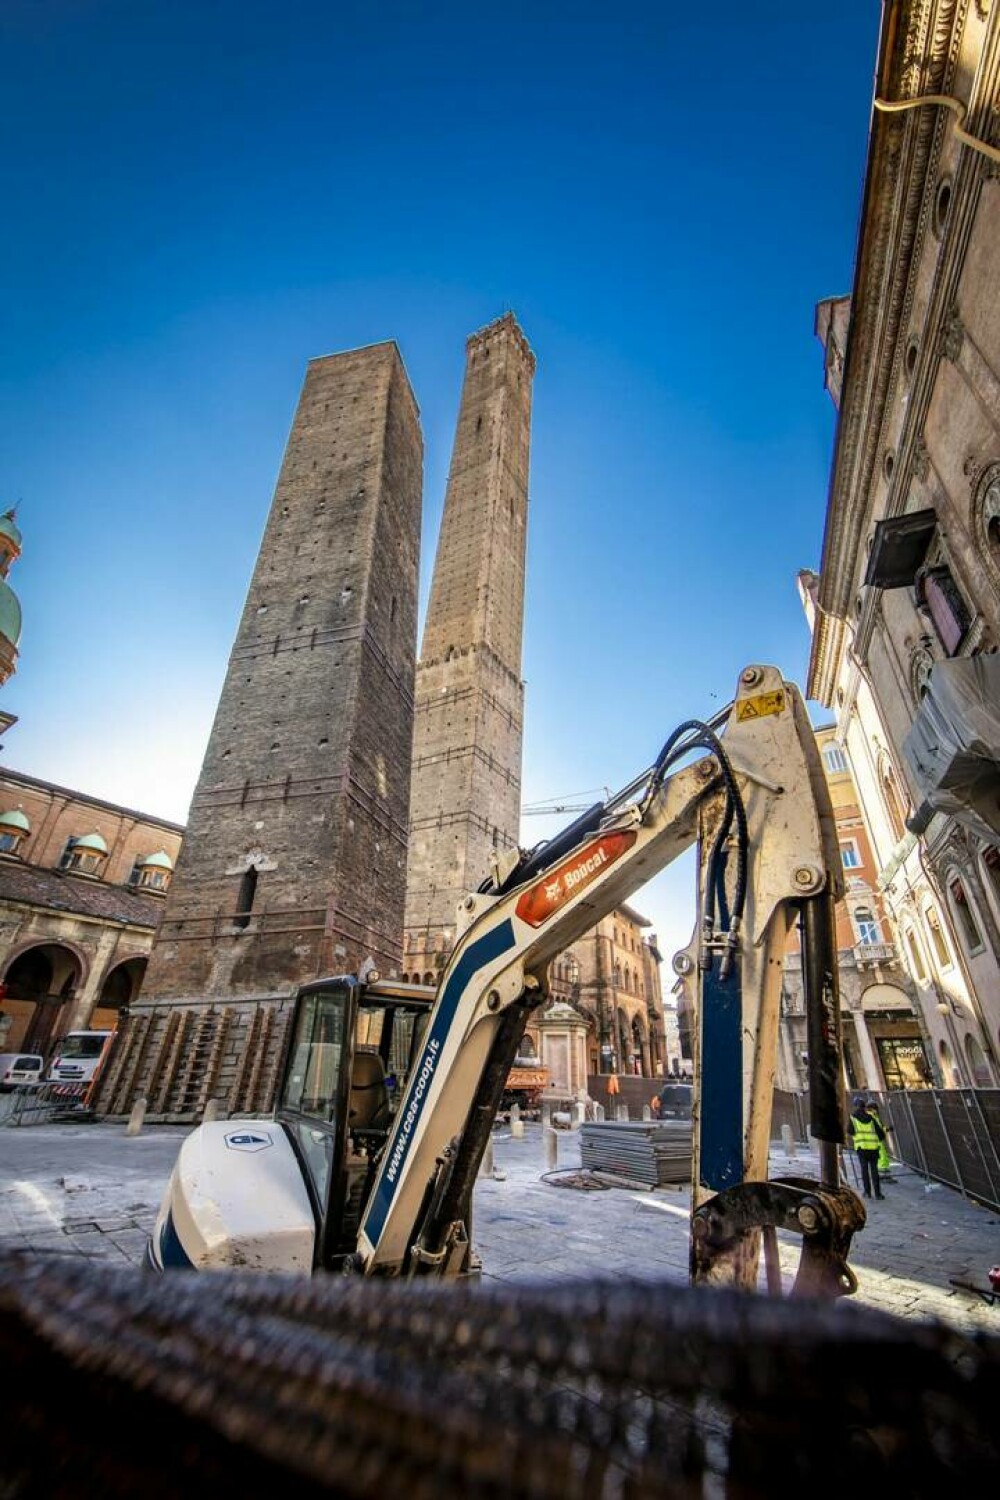 Turnul înclinat din Italia care s-ar putea prăbuși. Oficialii încearcă să-l mențină ridicat | GALERIE FOTO - Imaginea 1